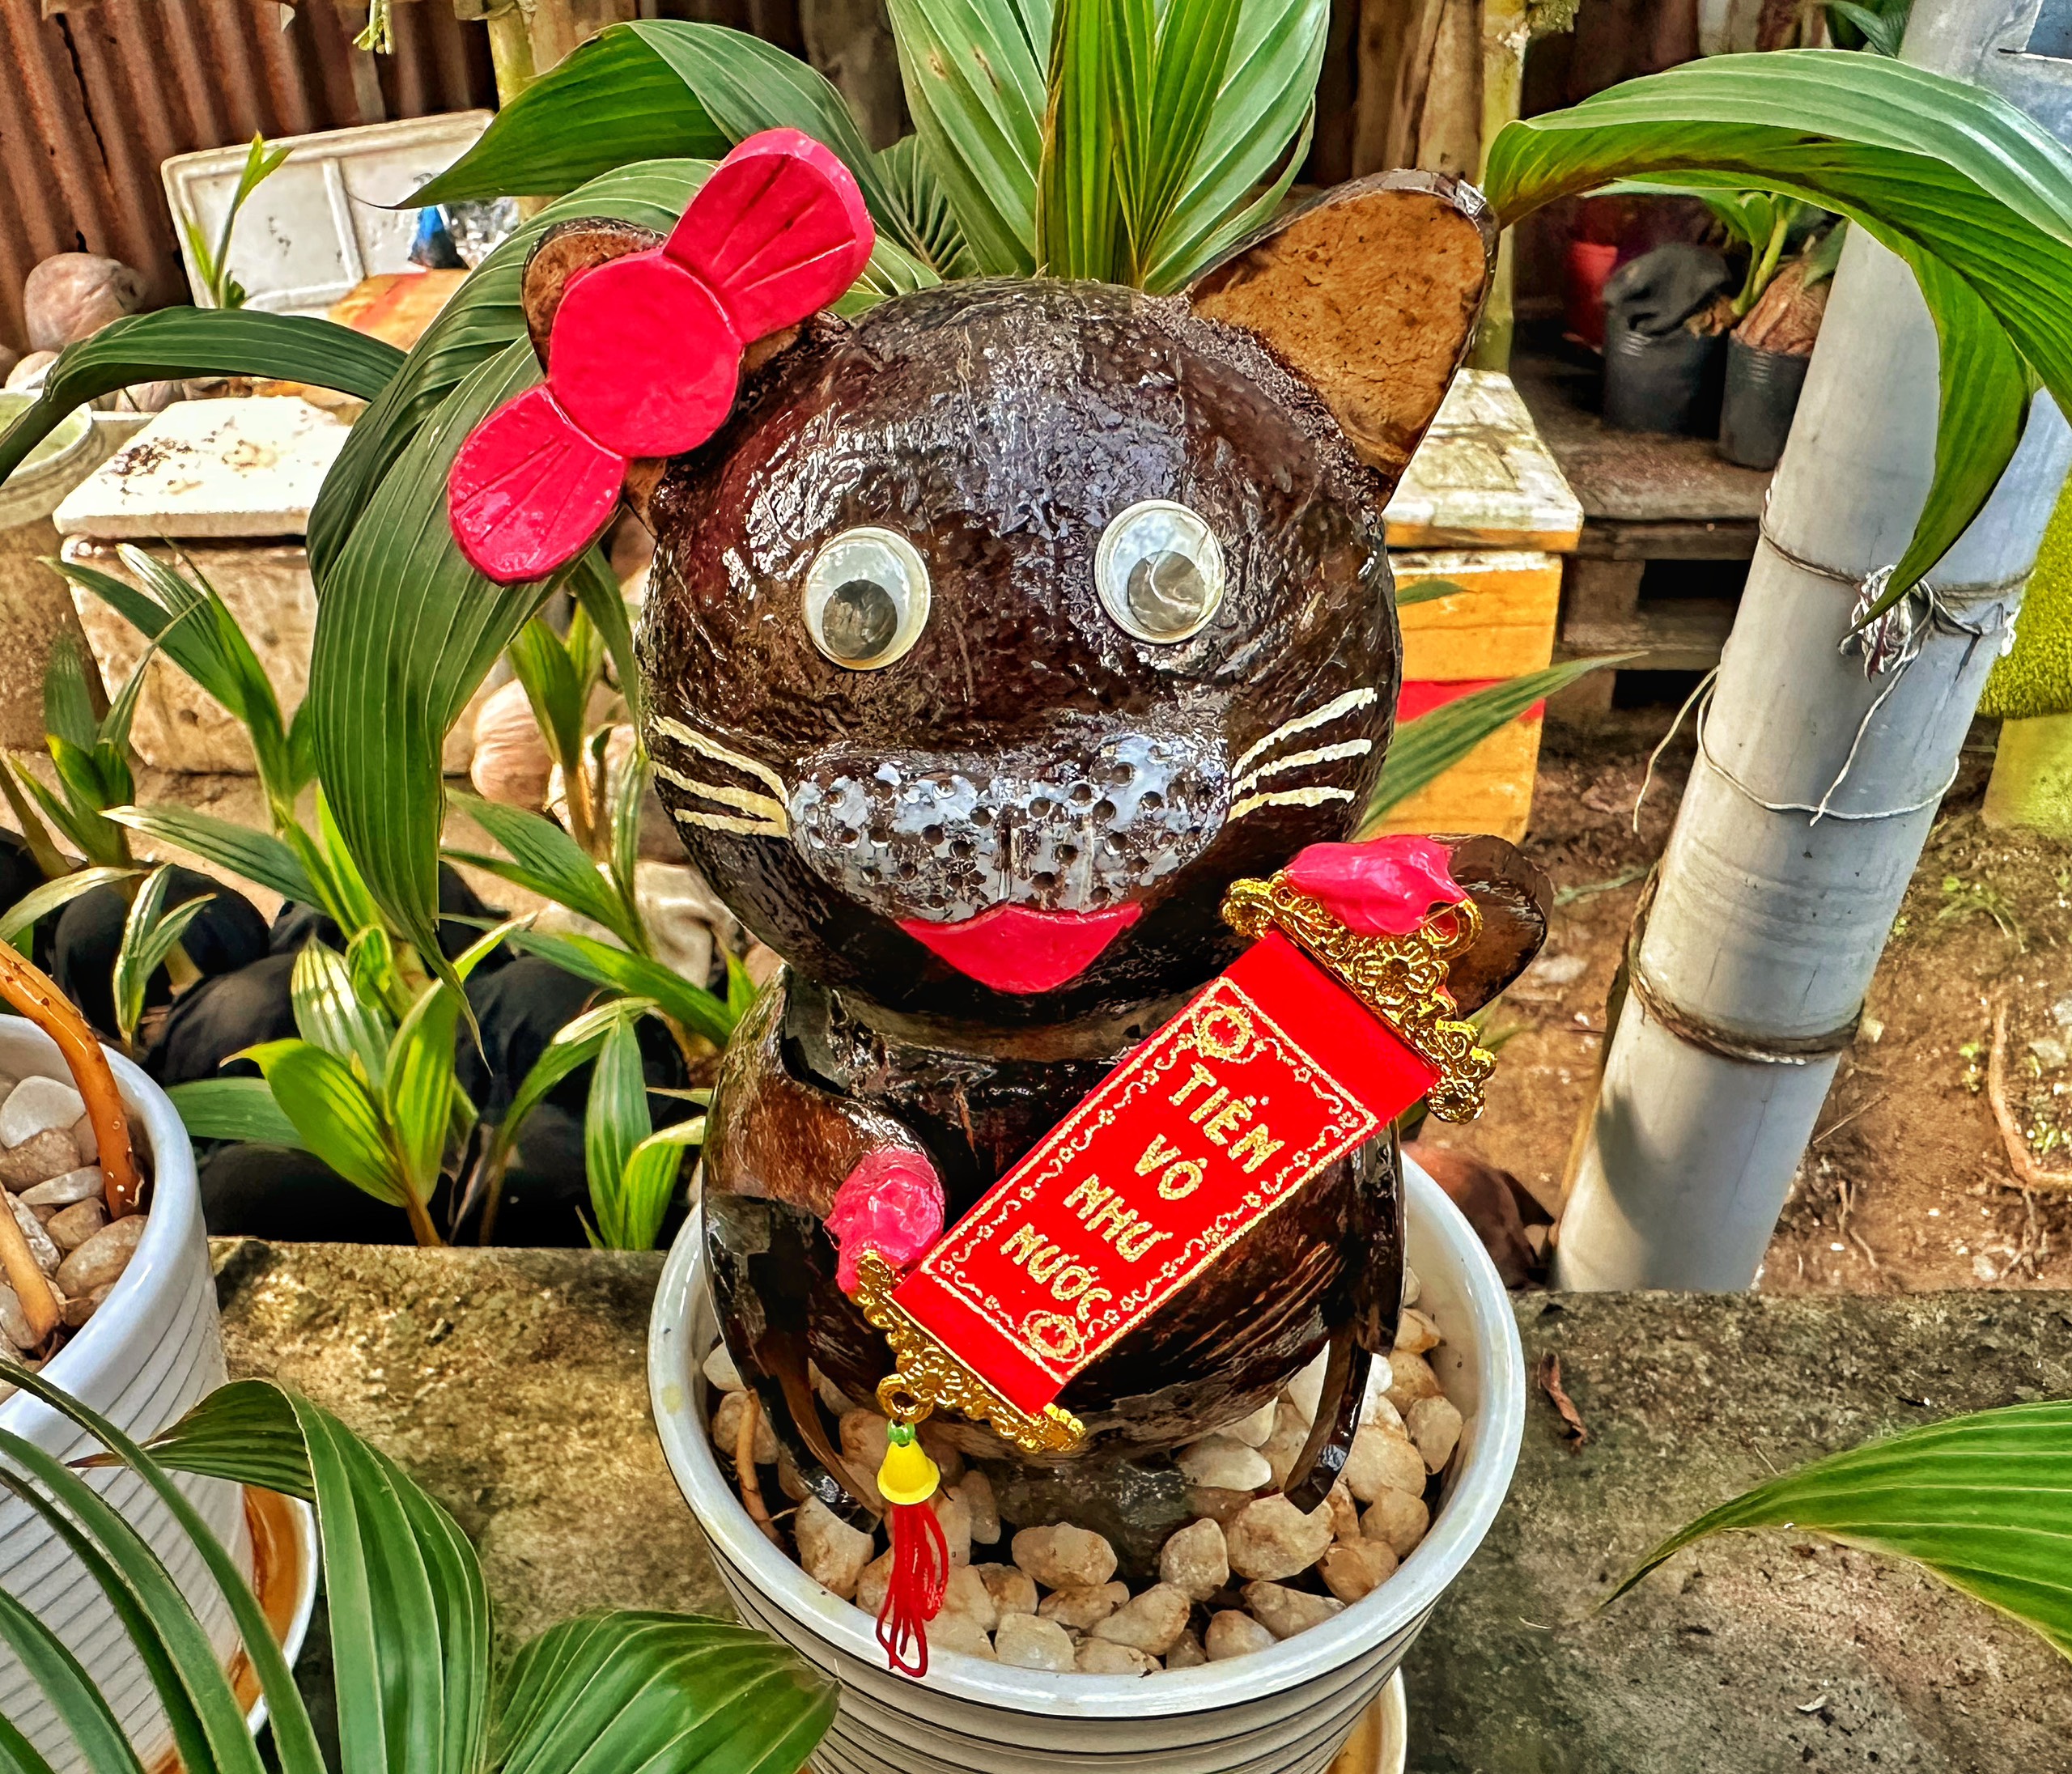 Thưởng thức nghệ thuật tao hình dừa Bonsai đã là một trải nghiệm thú vị cho bao người trên thế giới. Còn hình ảnh con mèo được tạo hình từ dừa Bonsai lại là một điều tuyệt vời và đầy sáng tạo. Nhấp chuột vào hình ảnh để thưởng thức tác phẩm nghệ thuật này.